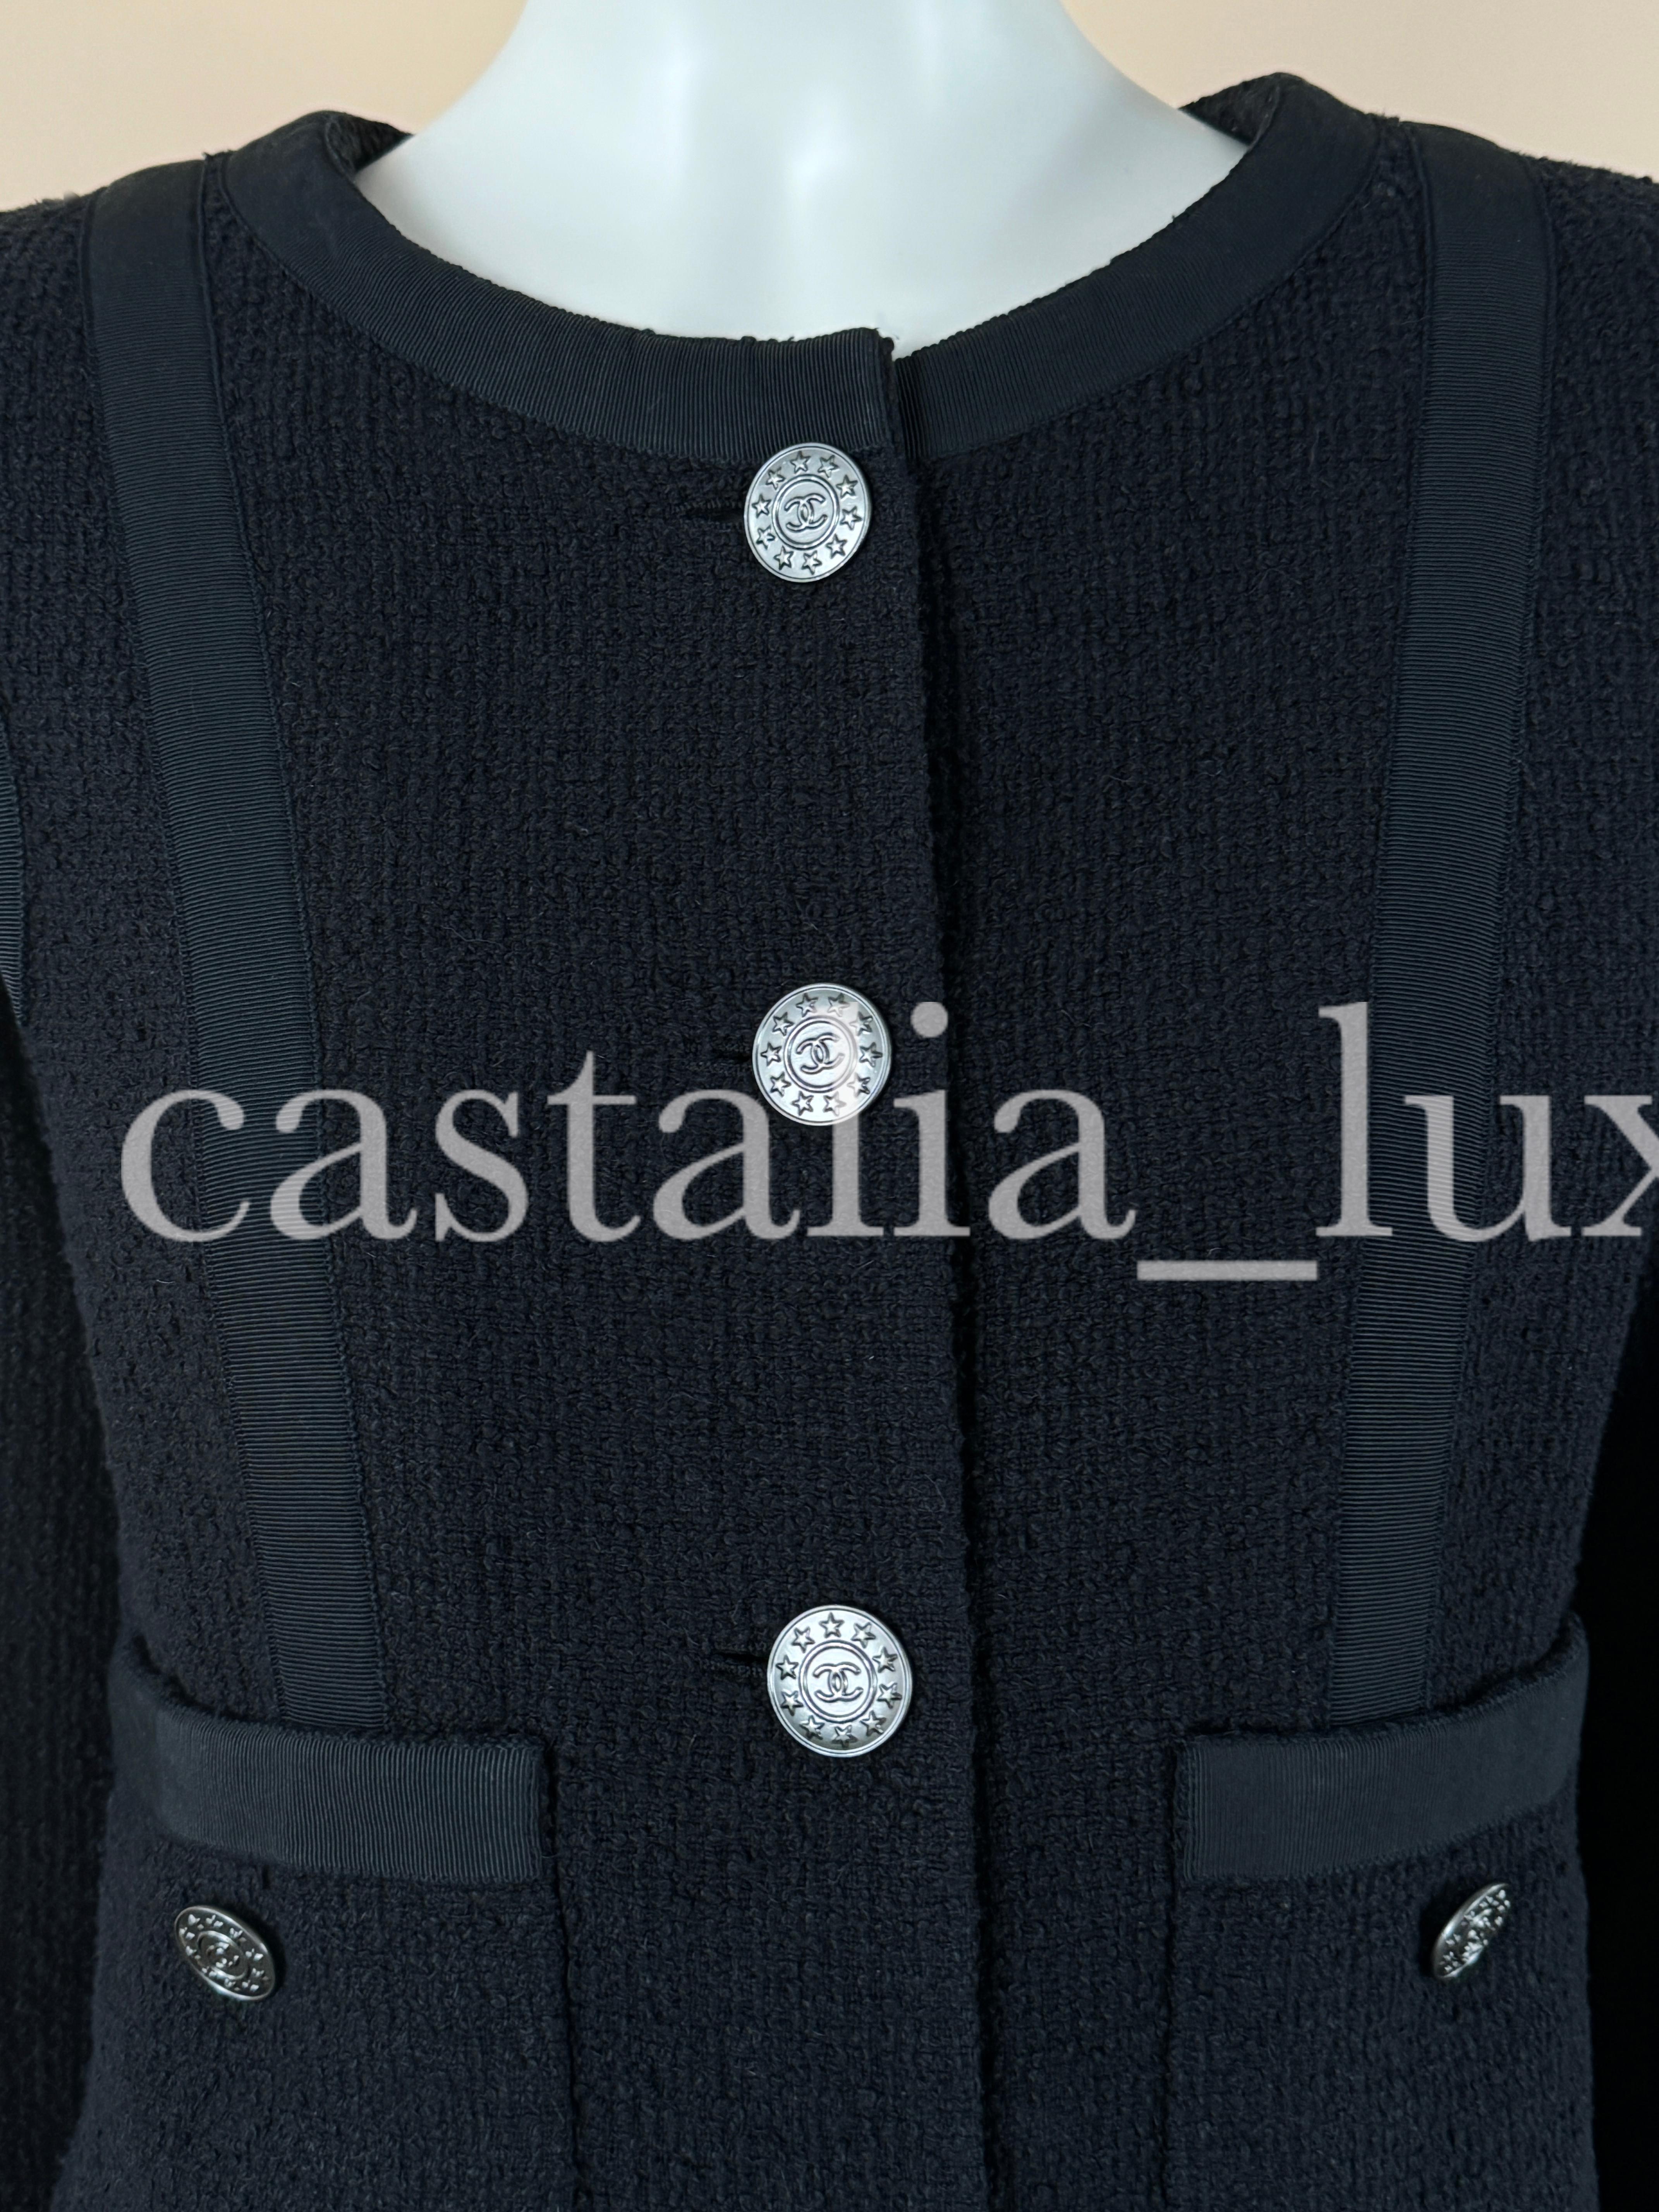 Veste intemporelle en tweed noir de Chanel avec boutons du logo CC.
- doublure en soie, maillons de chaîne à l'ourlet
Taille 50 FR. L'état est pritsine.